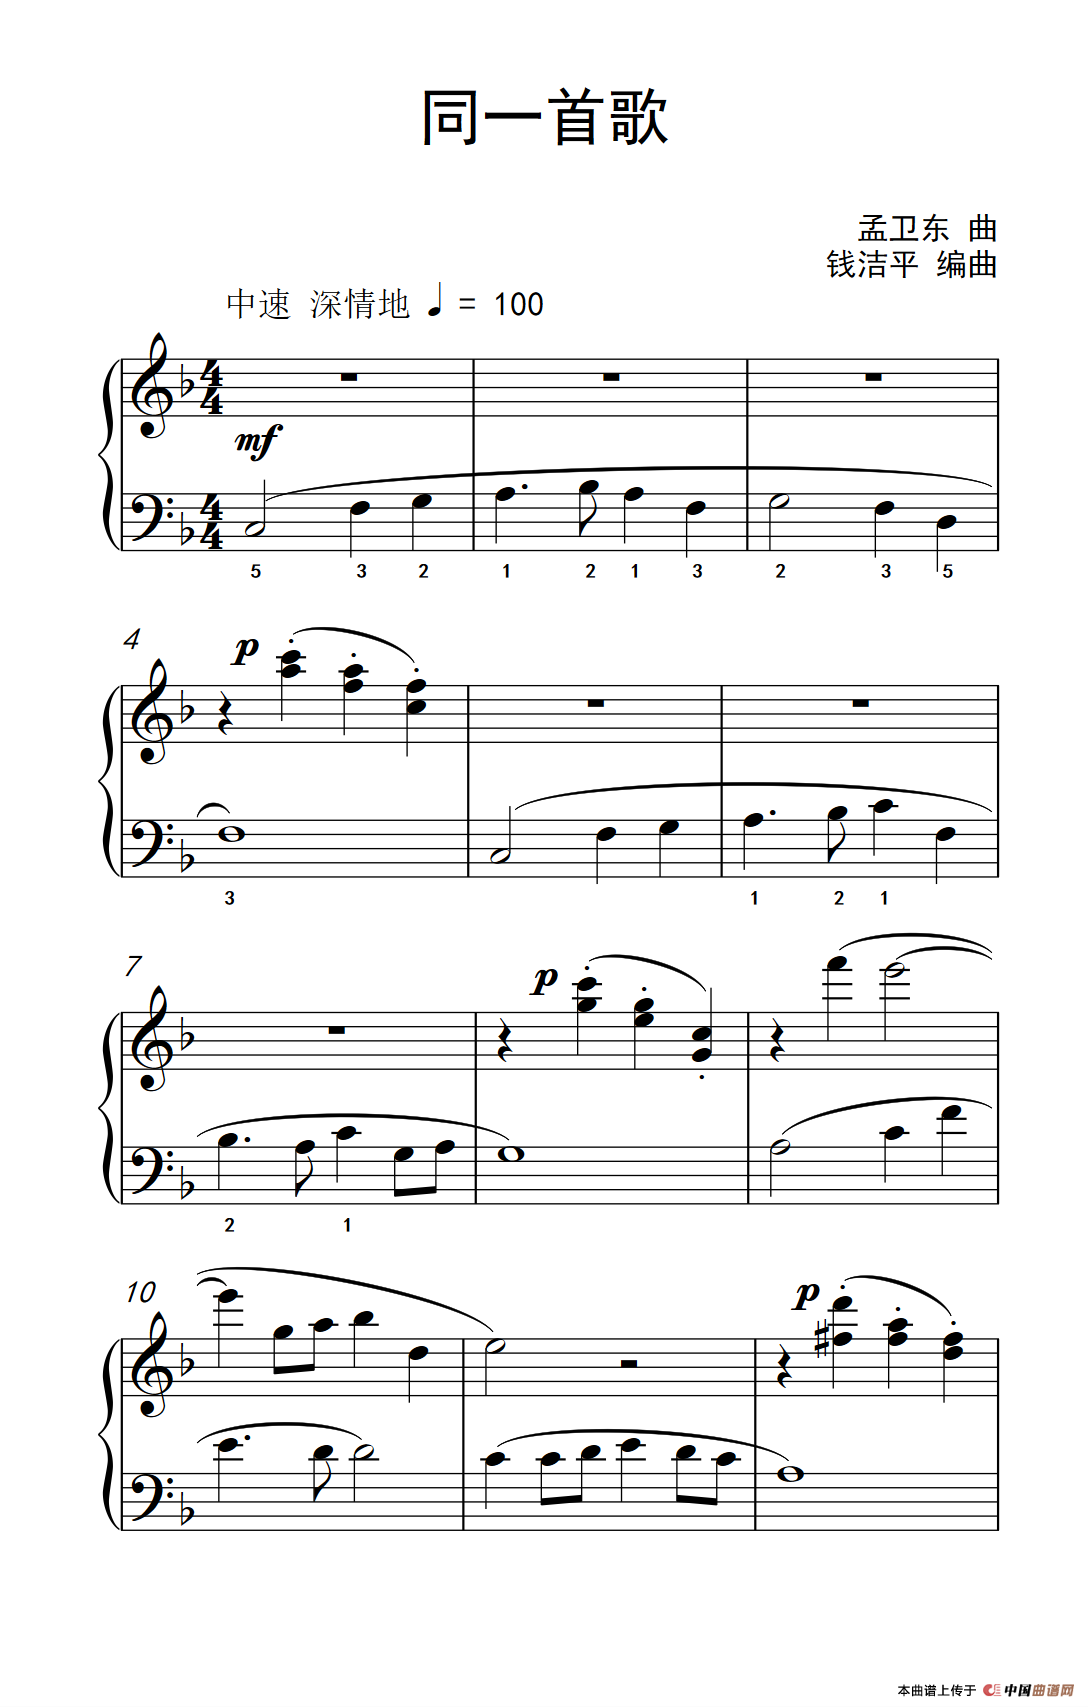 玫瑰经（约翰·汤普森 成人钢琴教程 第三册）(1)_245_33_1.png